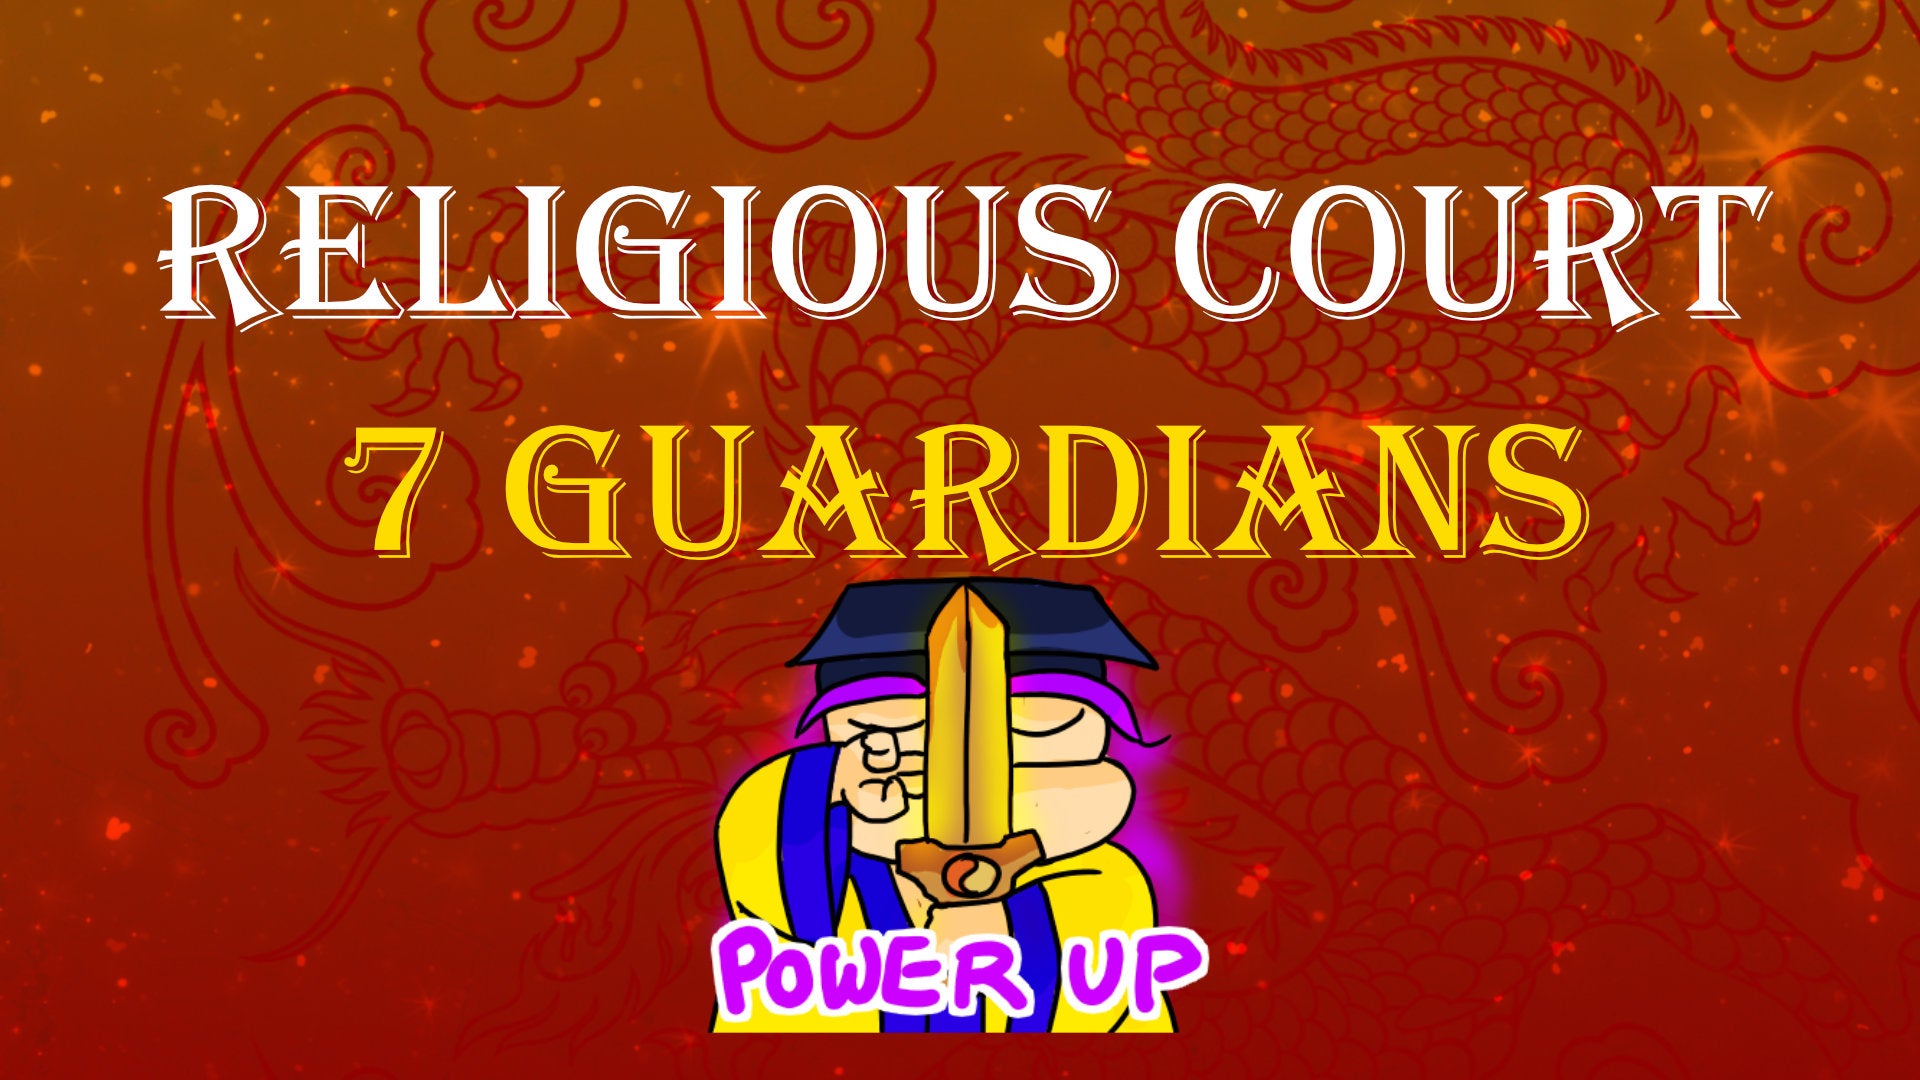 
          Religious Court Guardians
        